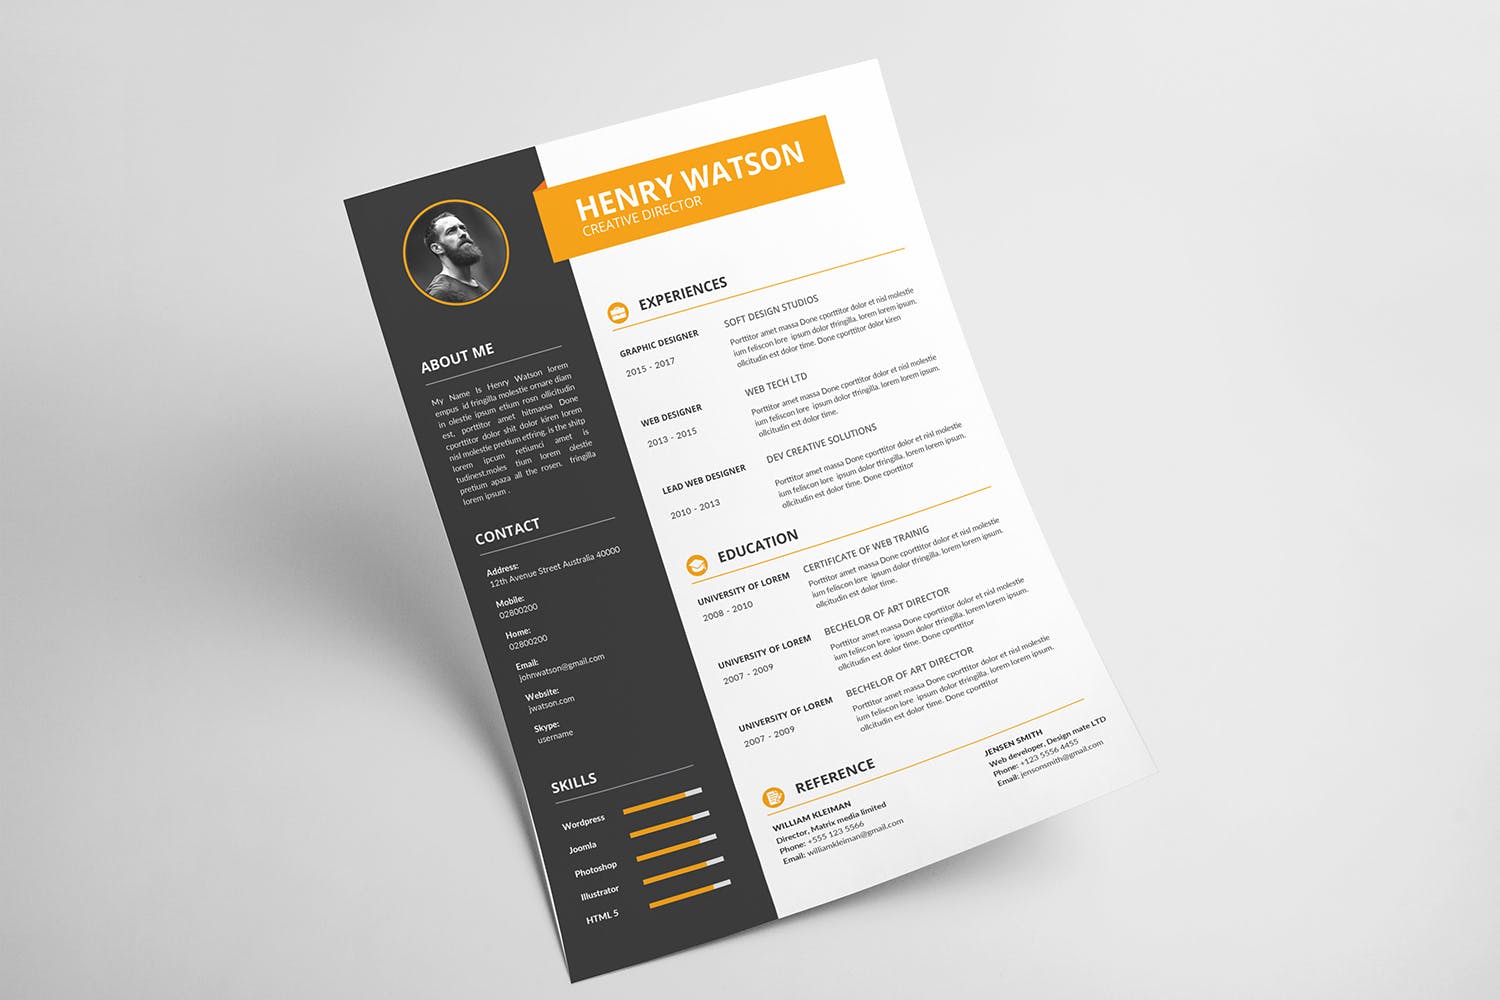 两列式排版风格个人简历&介绍信设计模板 CV Resume插图(2)